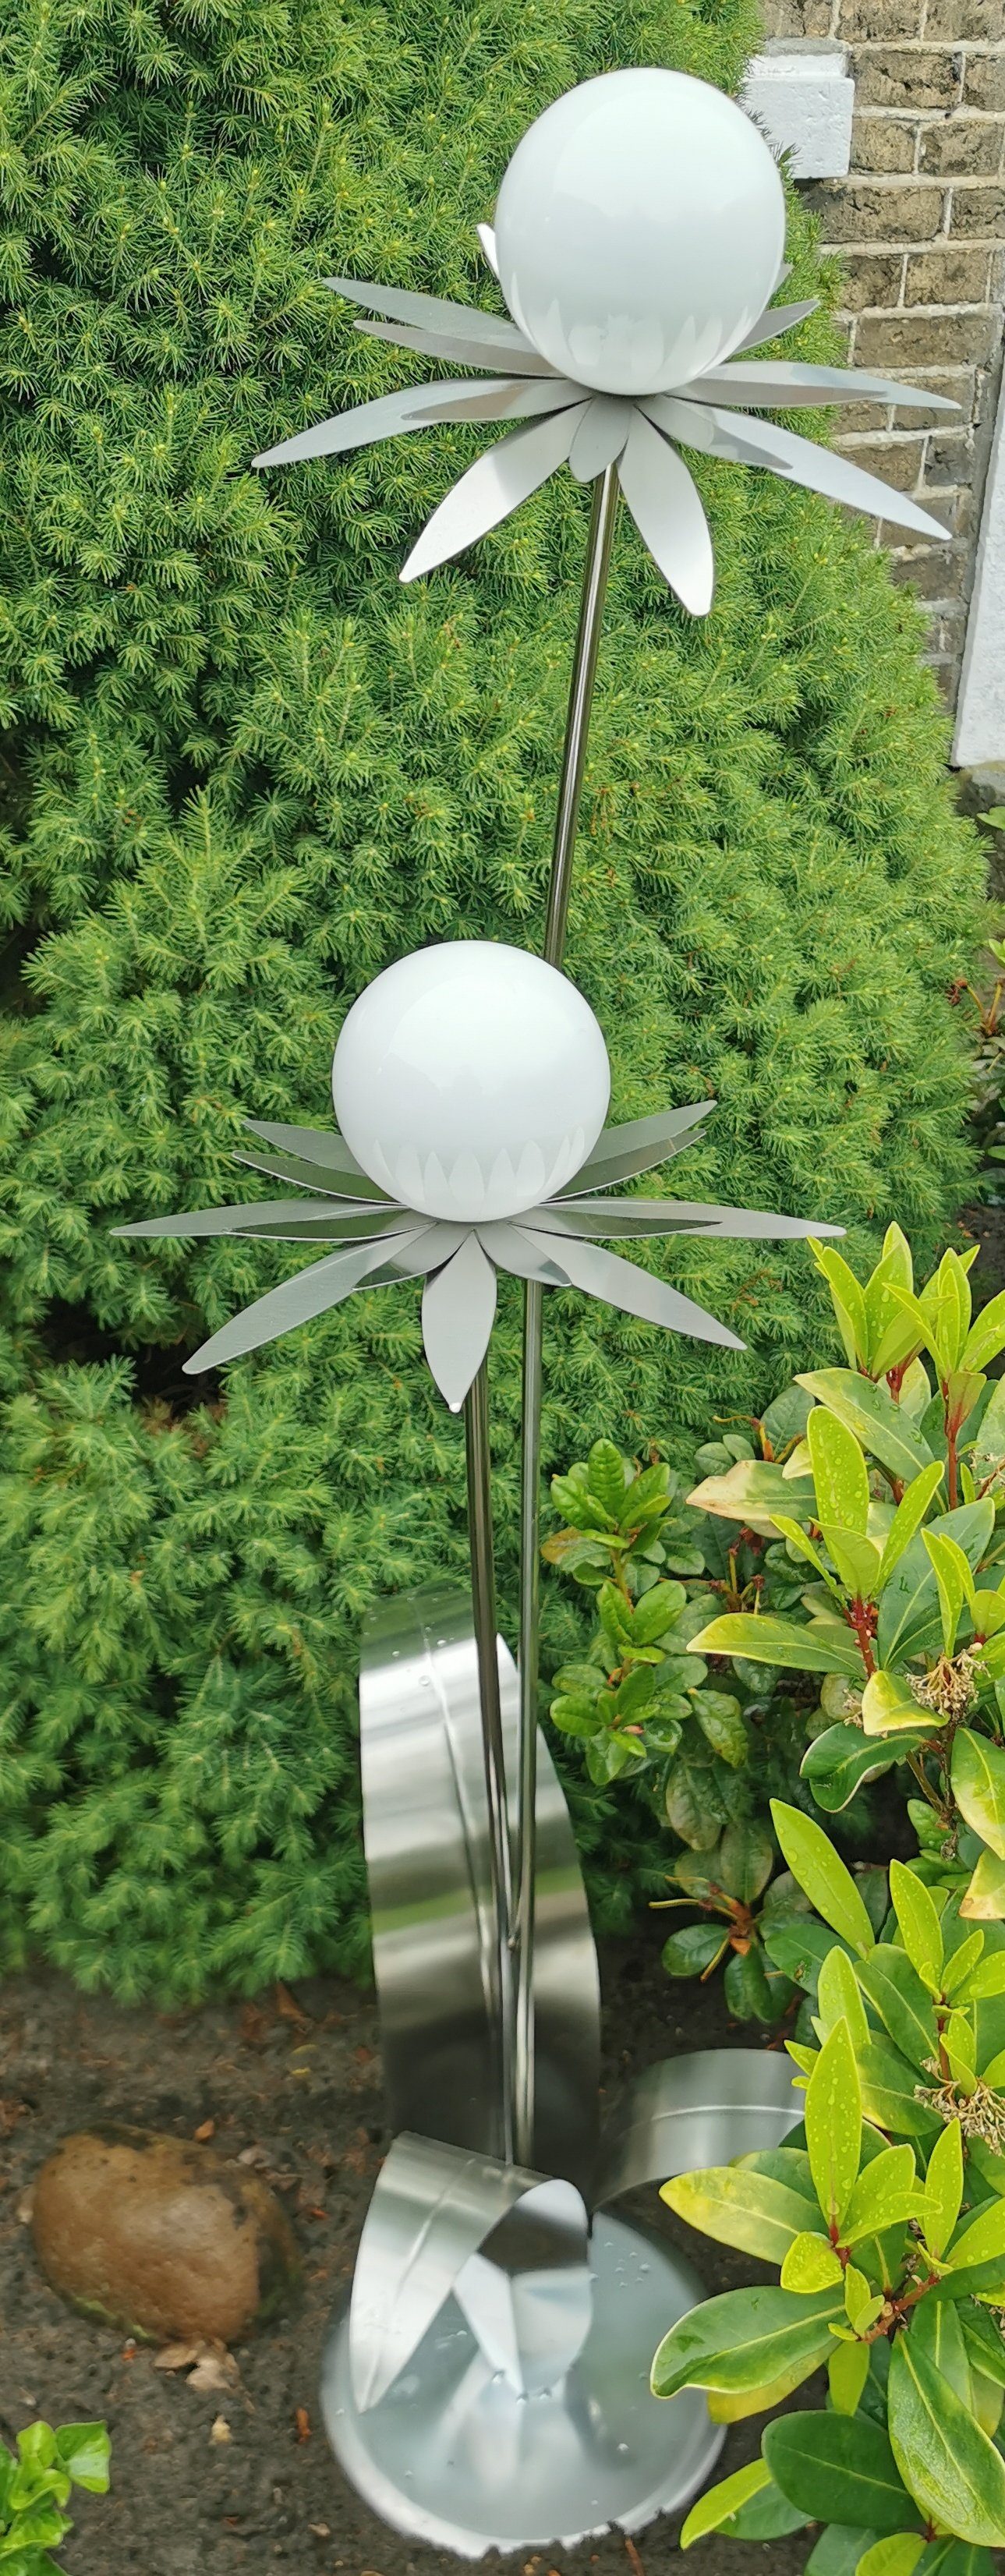 Garten-Ambiente cm weiß Bocker 120 Jürgen Milano Edelstahl Kugel Skulptur poliert Standfuß Gartenstecker Blume